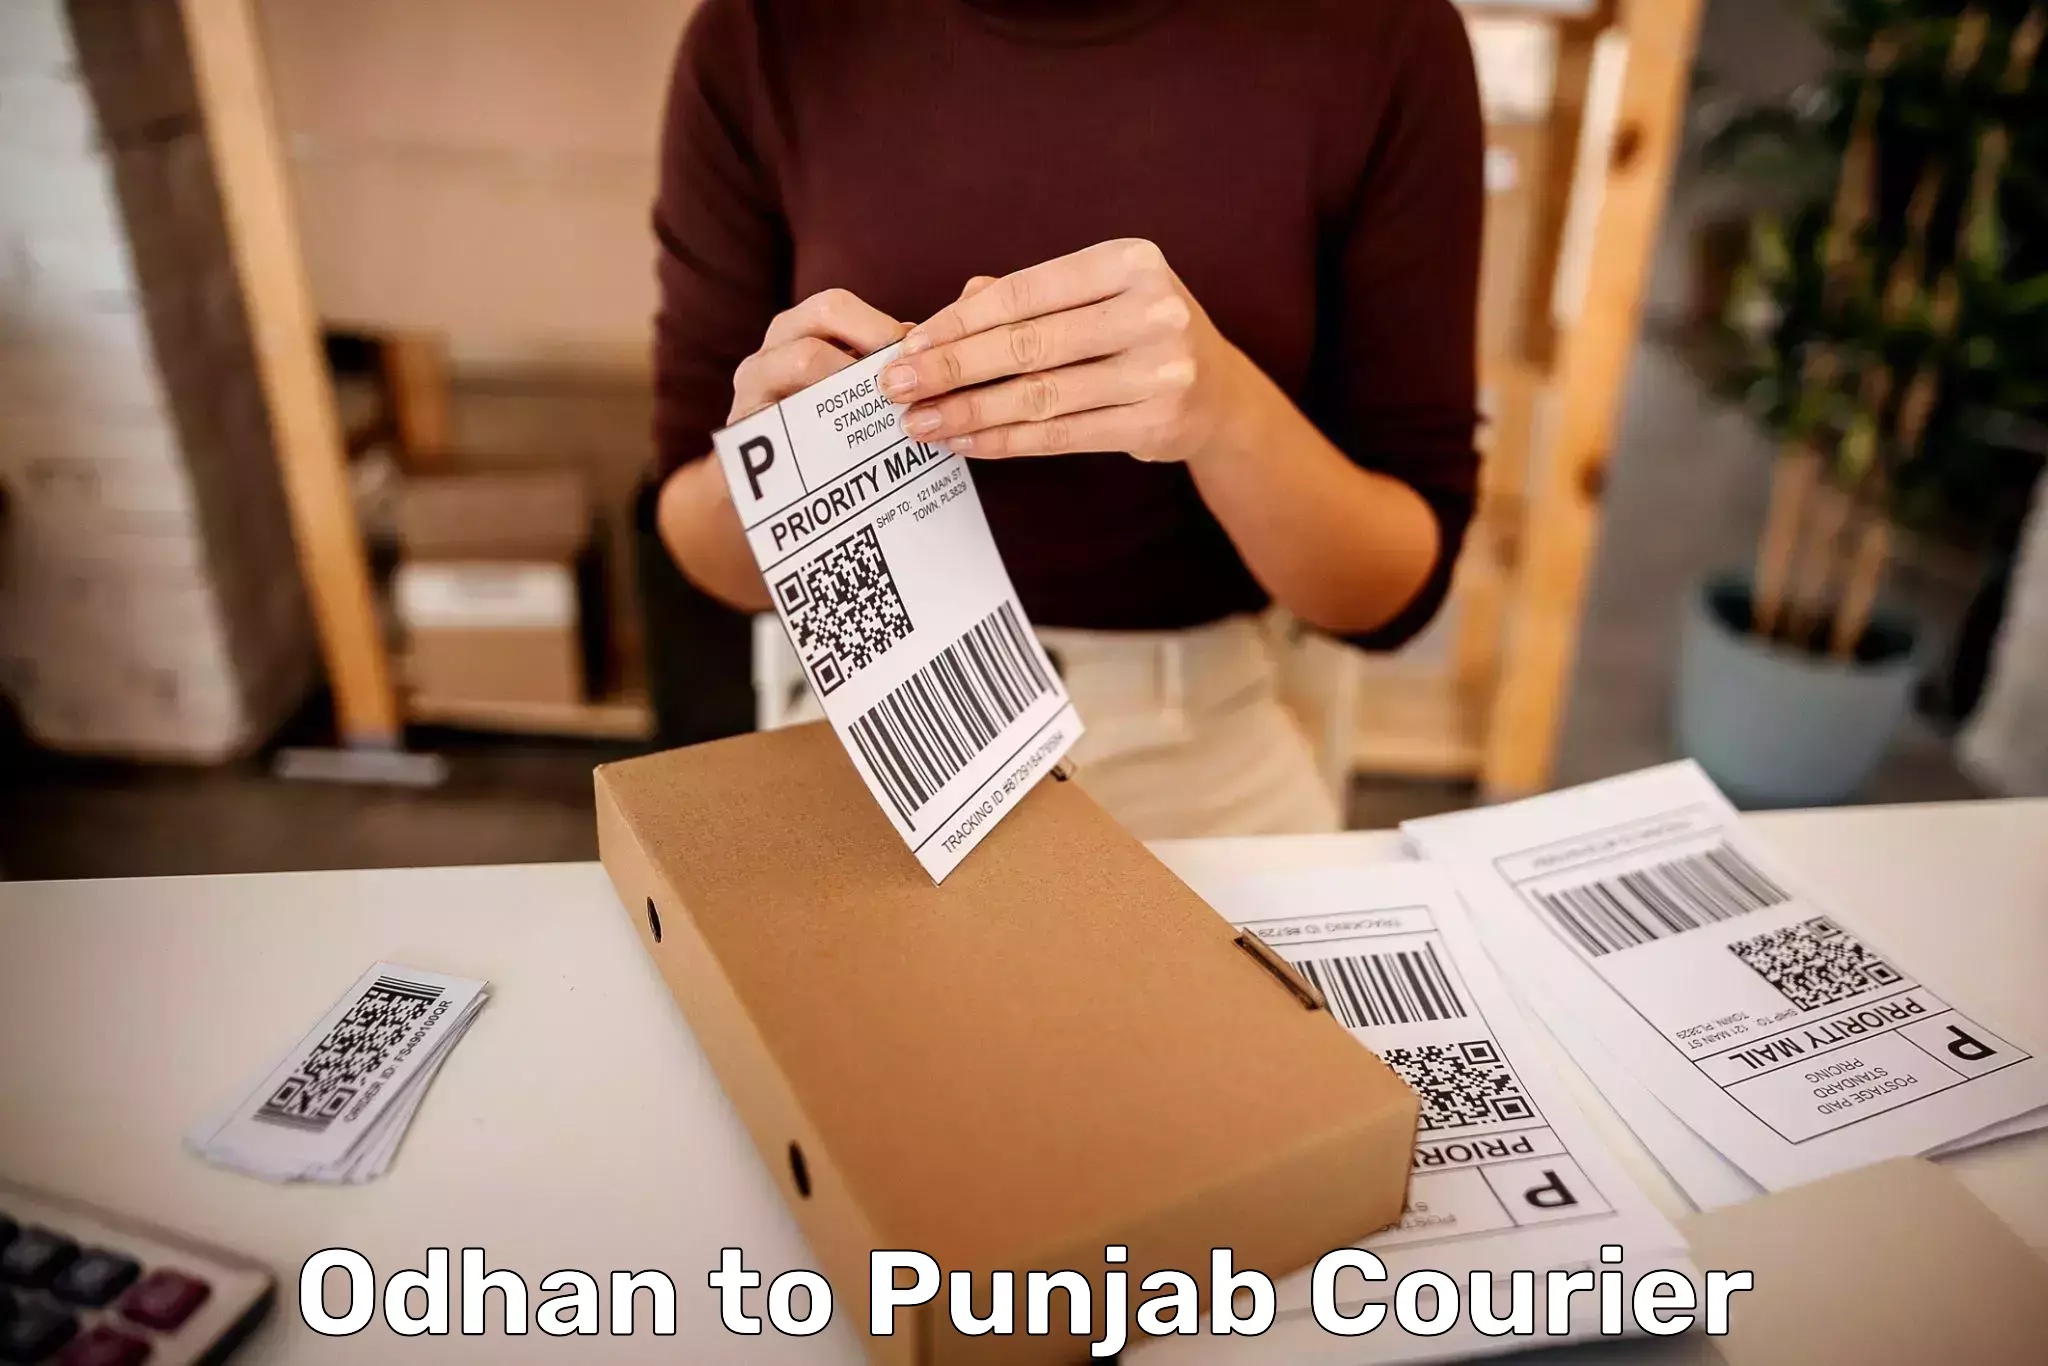 Artwork baggage courier Odhan to Punjab